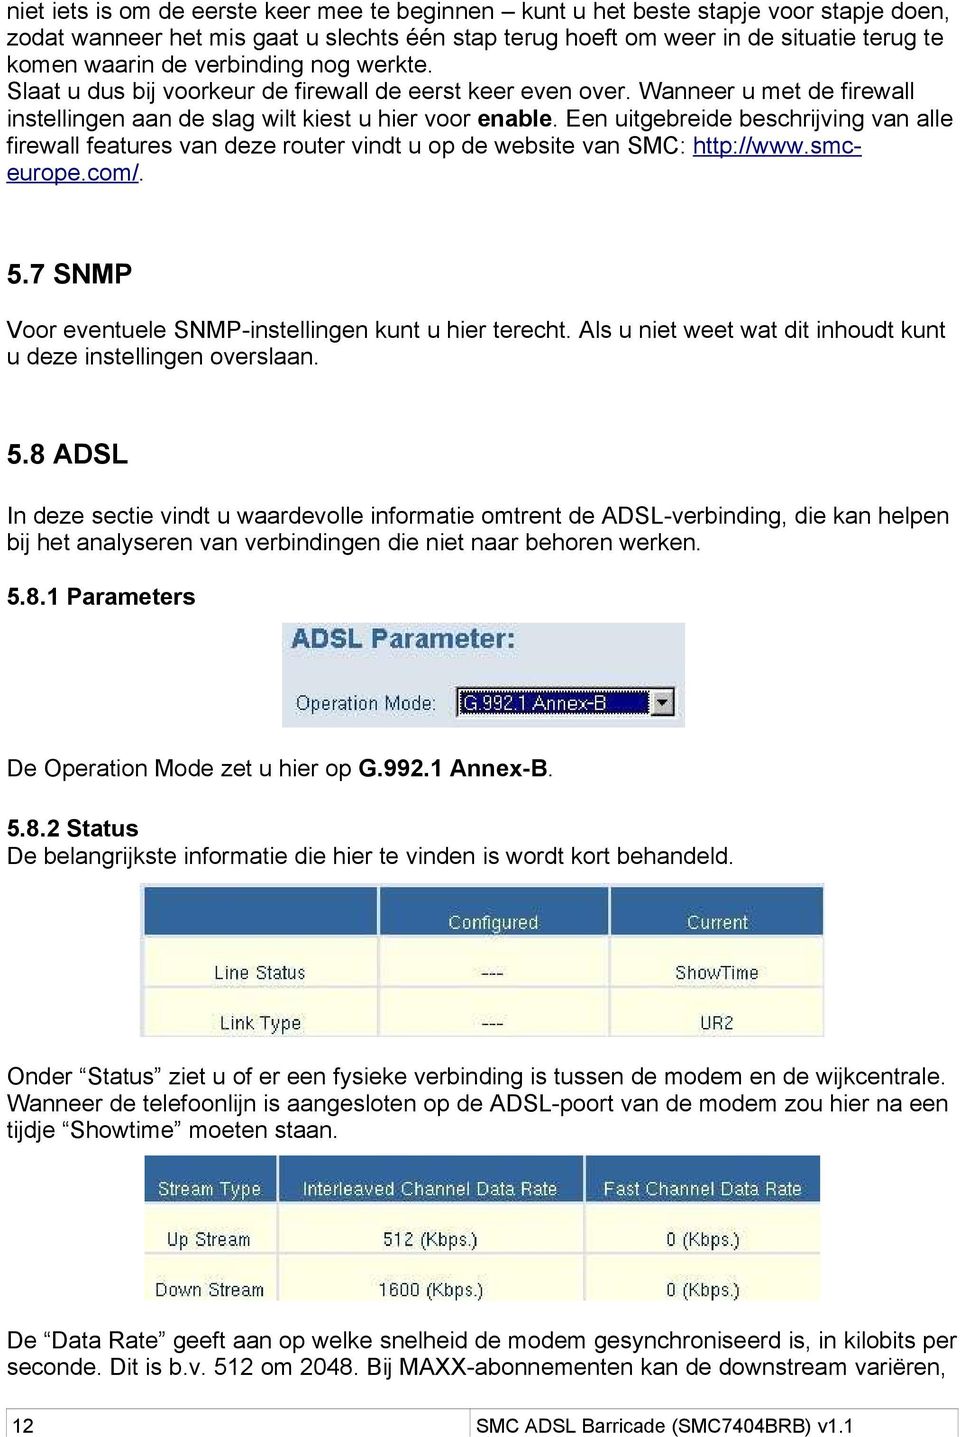 Een uitgebreide beschrijving van alle firewall features van deze router vindt u op de website van SMC: http://www.smceurope.com/. 5.7 SNMP Voor eventuele SNMP-instellingen kunt u hier terecht.